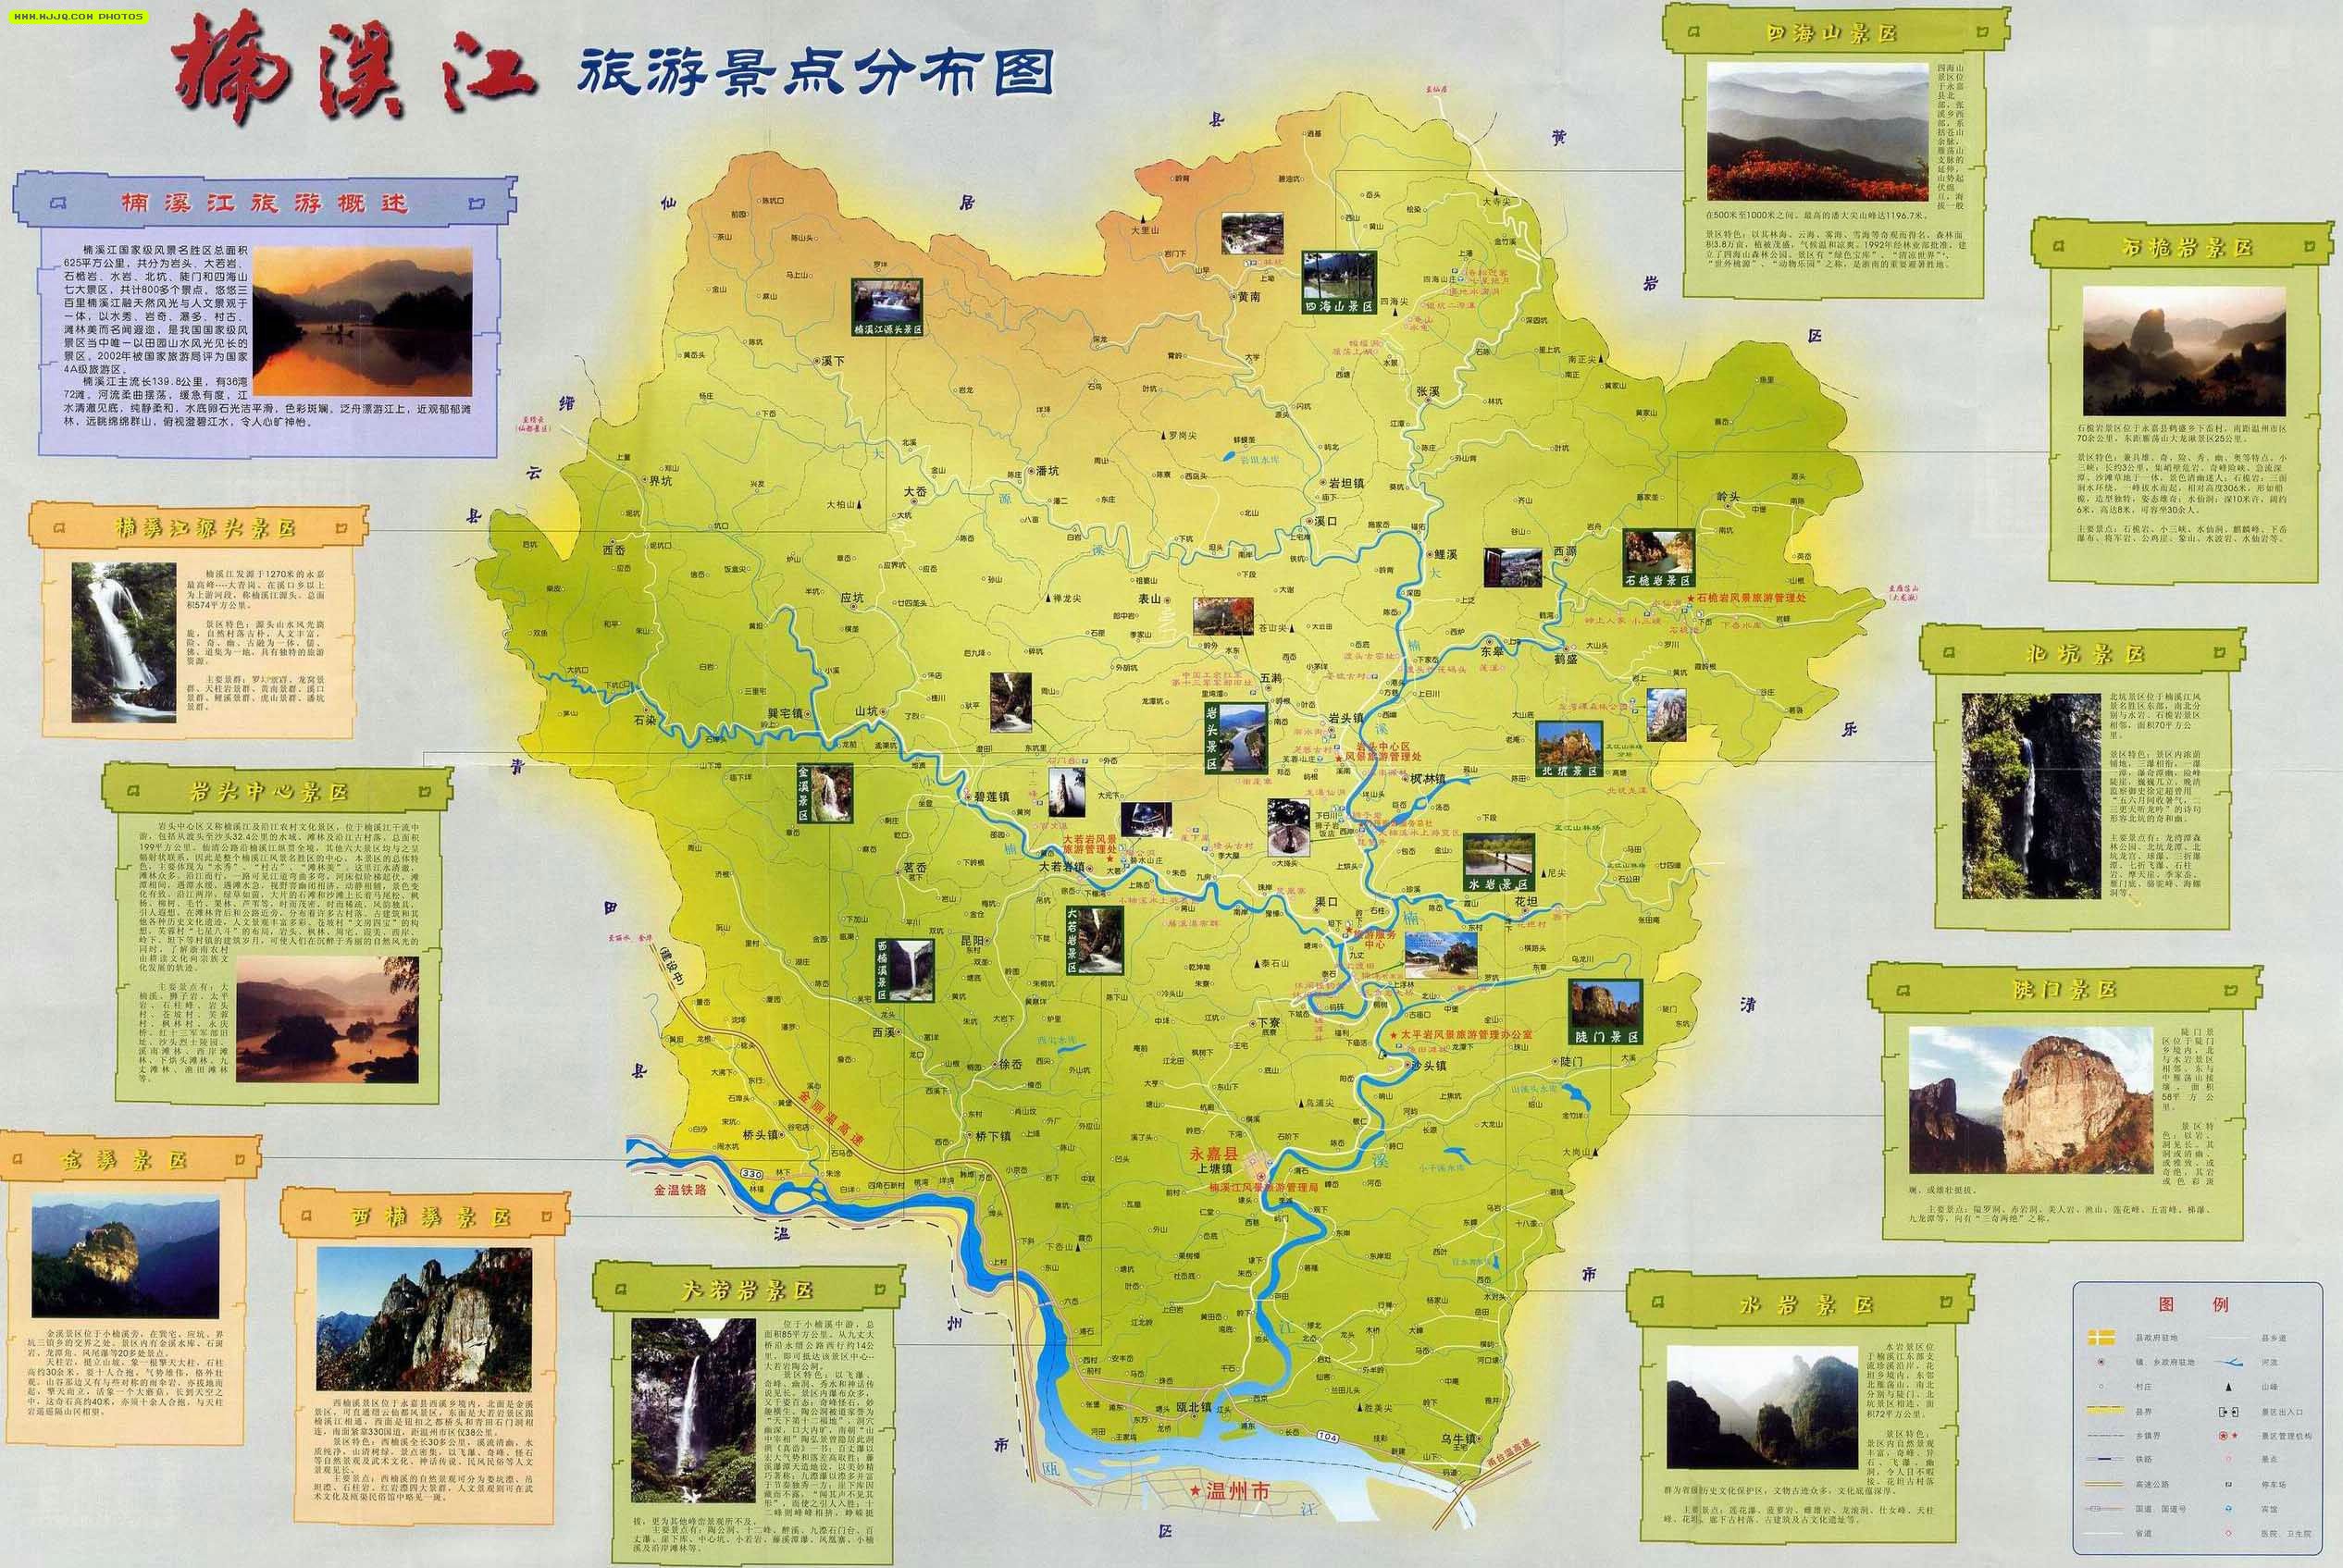 楠溪江风景区位于浙东南瓯江北岸的永嘉县中部,与雁荡山风景区图片